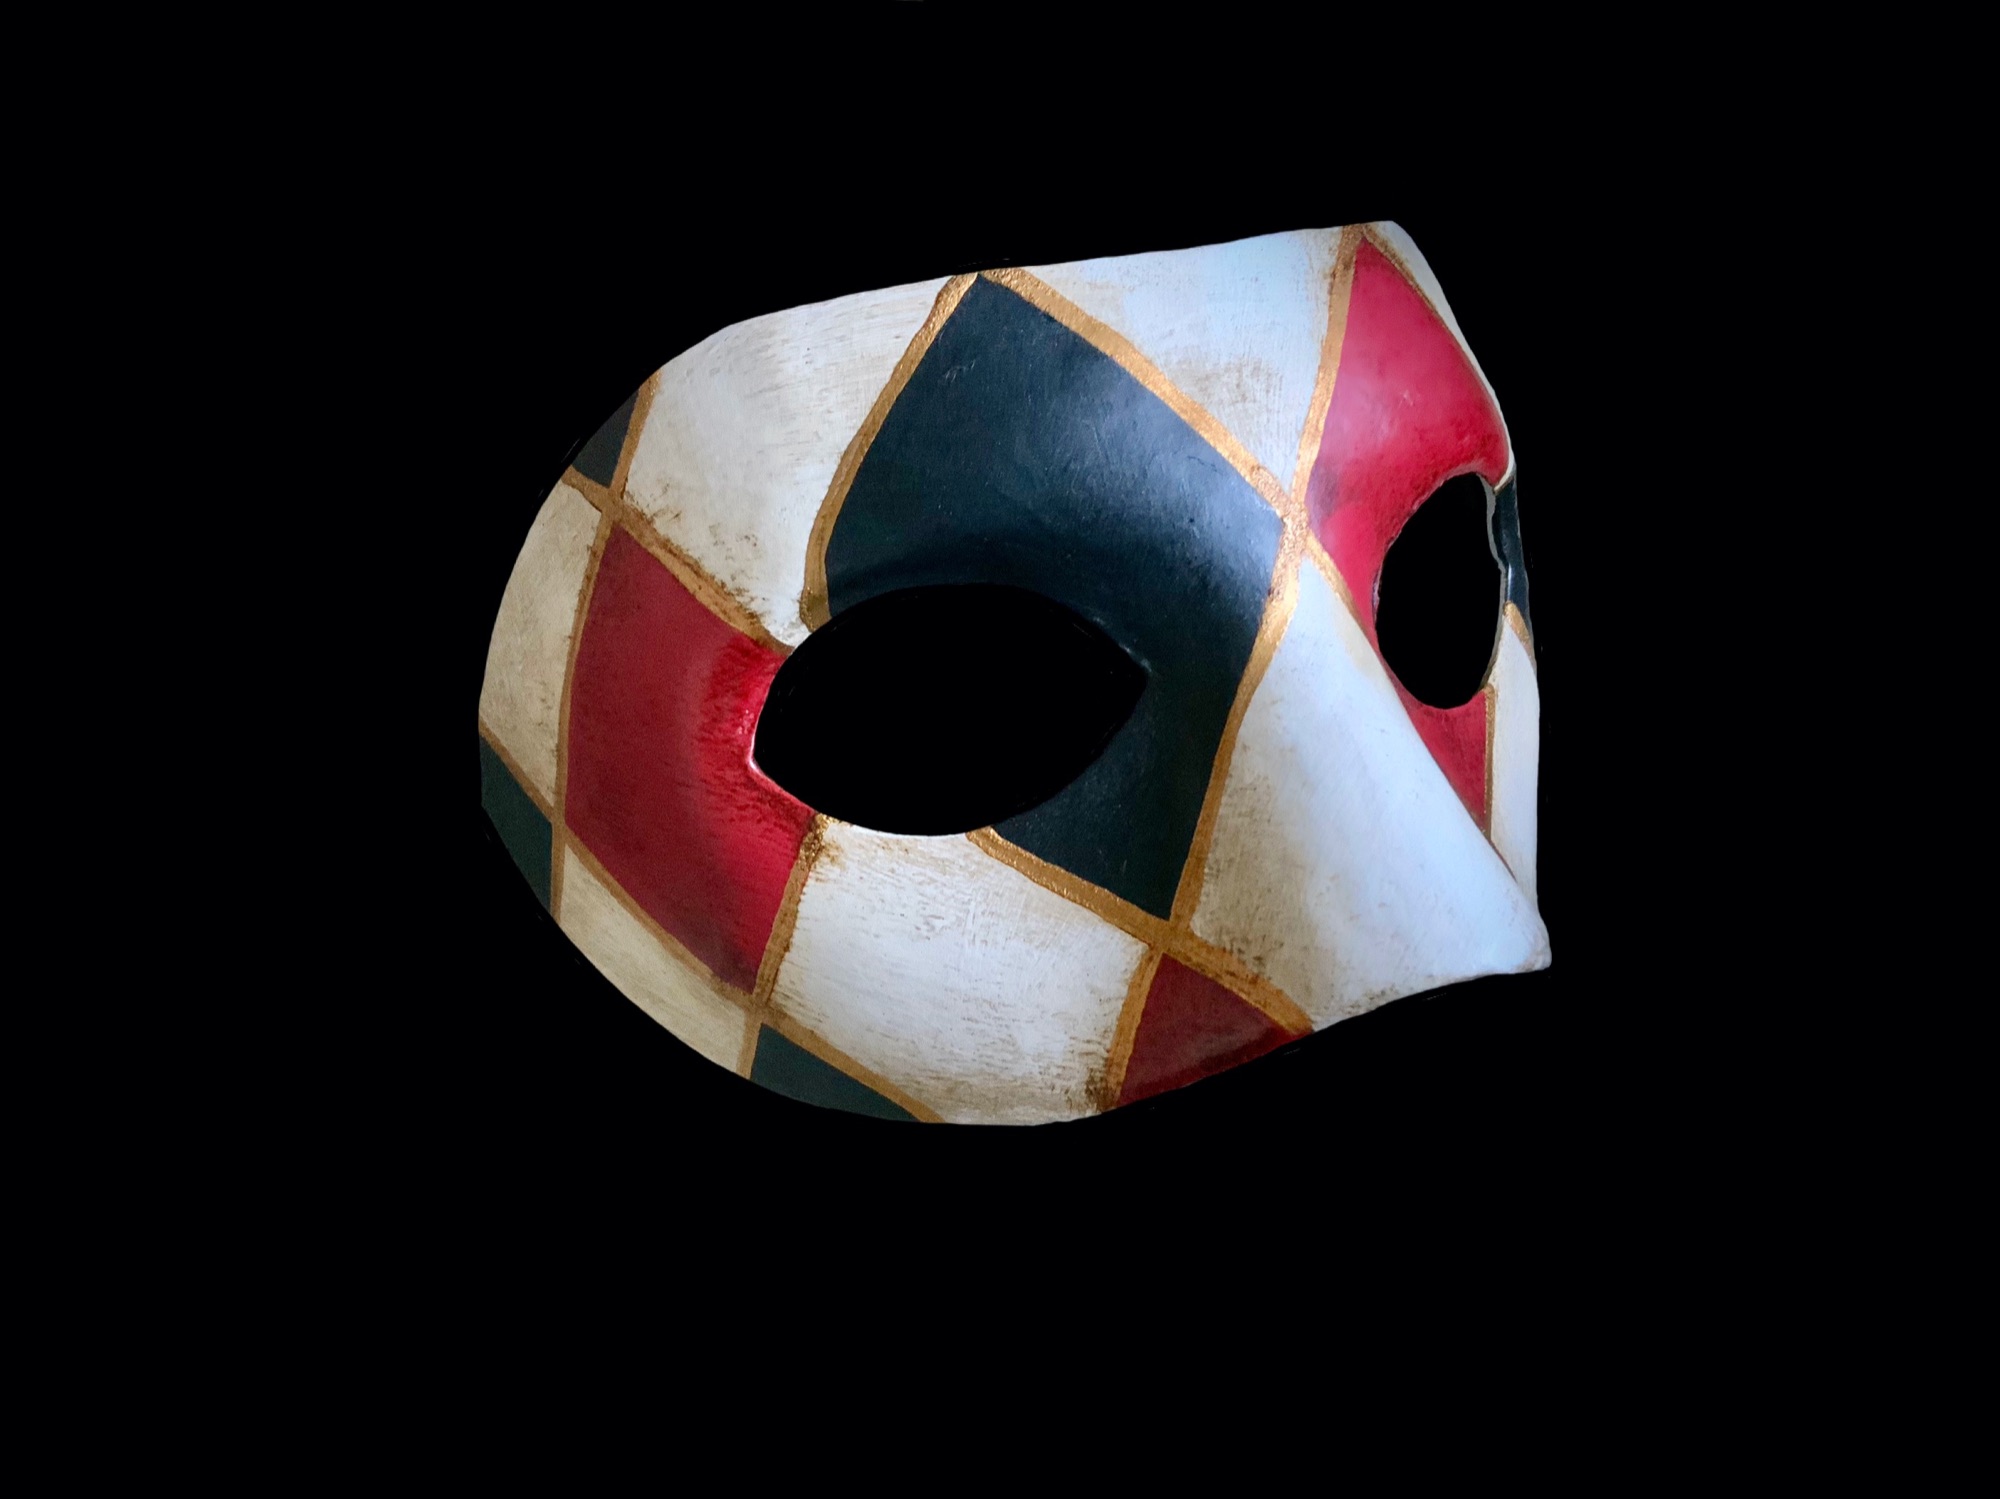 How to make a masquerade mask for men - Quora